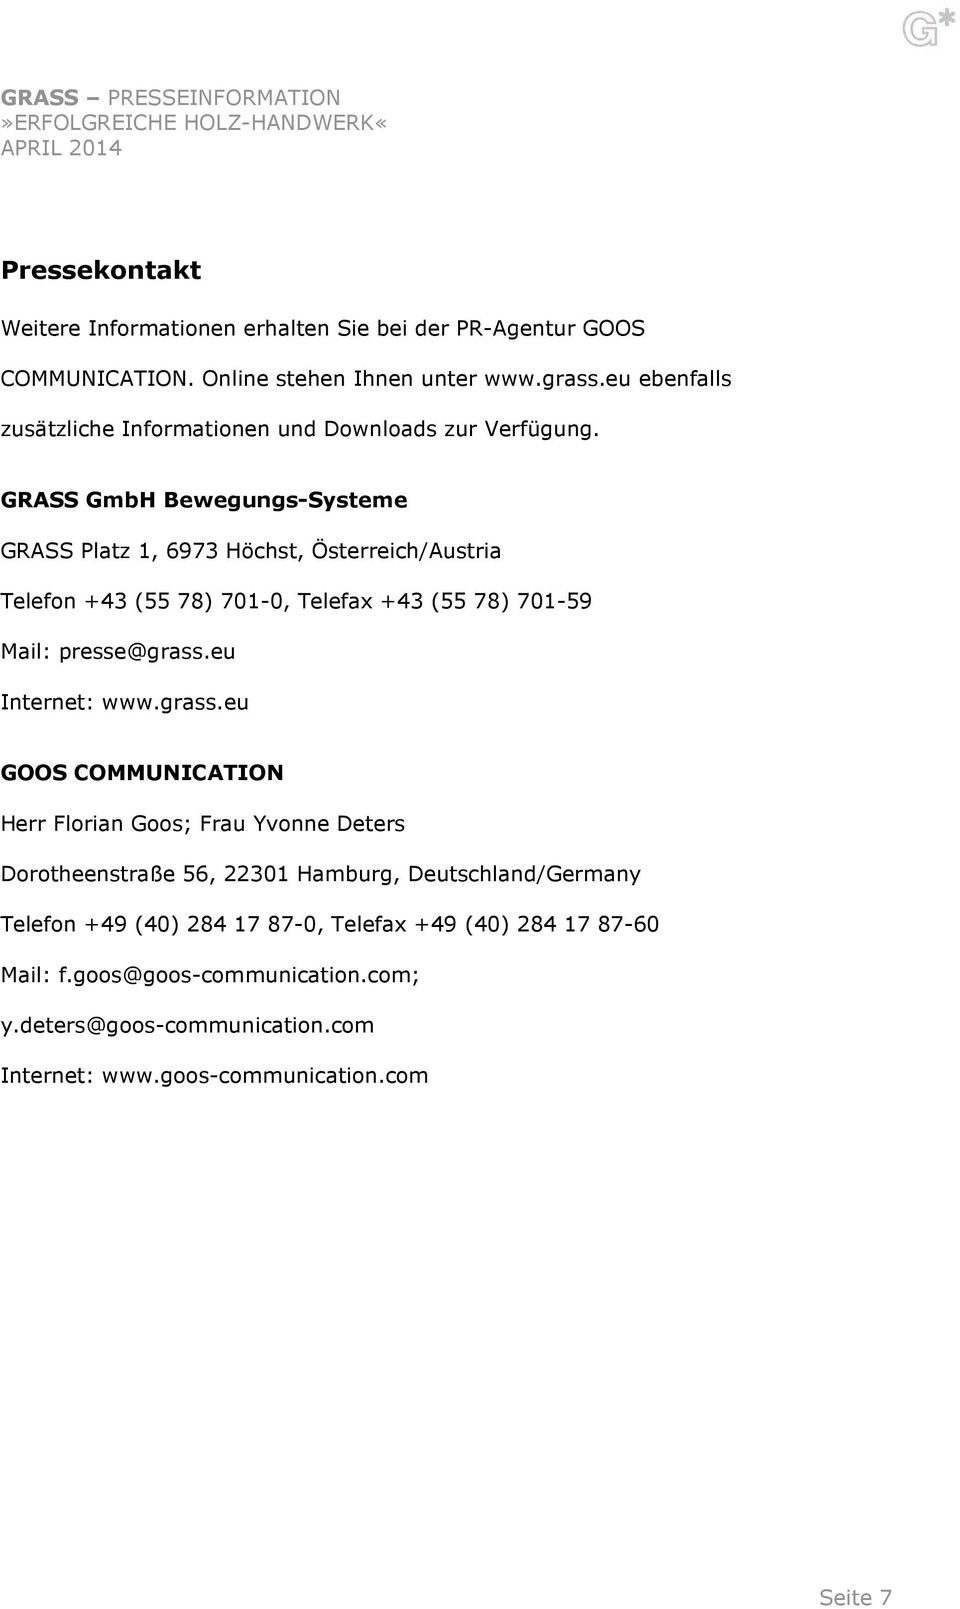 GRASS GmbH Bewegungs-Systeme GRASS Platz 1, 6973 Höchst, Österreich/Austria Telefon +43 (55 78) 701-0, Telefax +43 (55 78) 701-59 Mail: presse@grass.